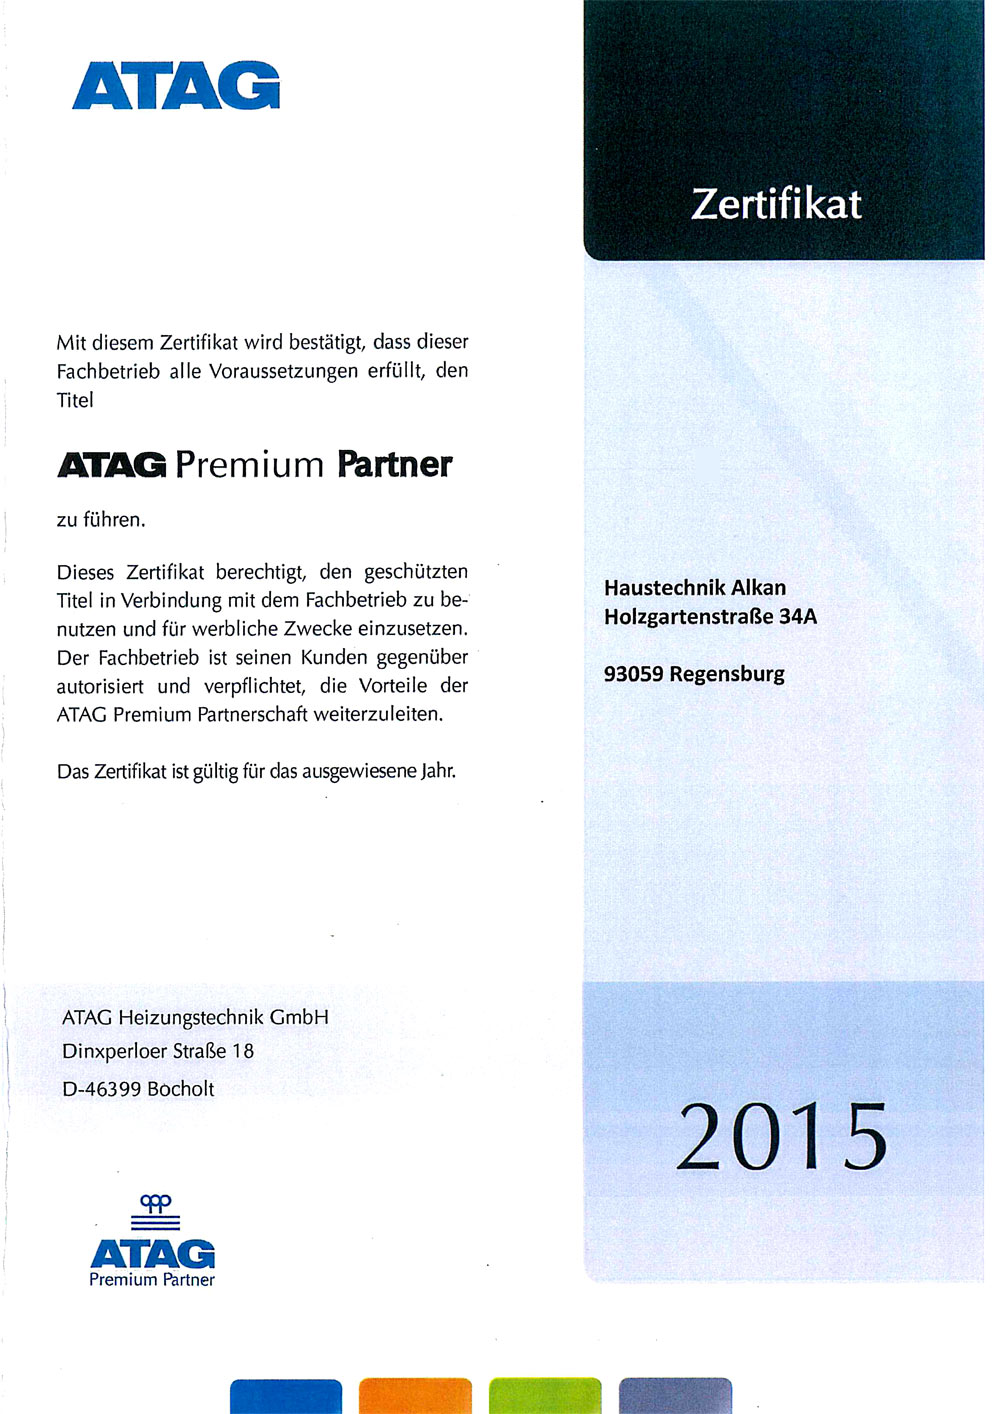 ATAG-Premium-Partner